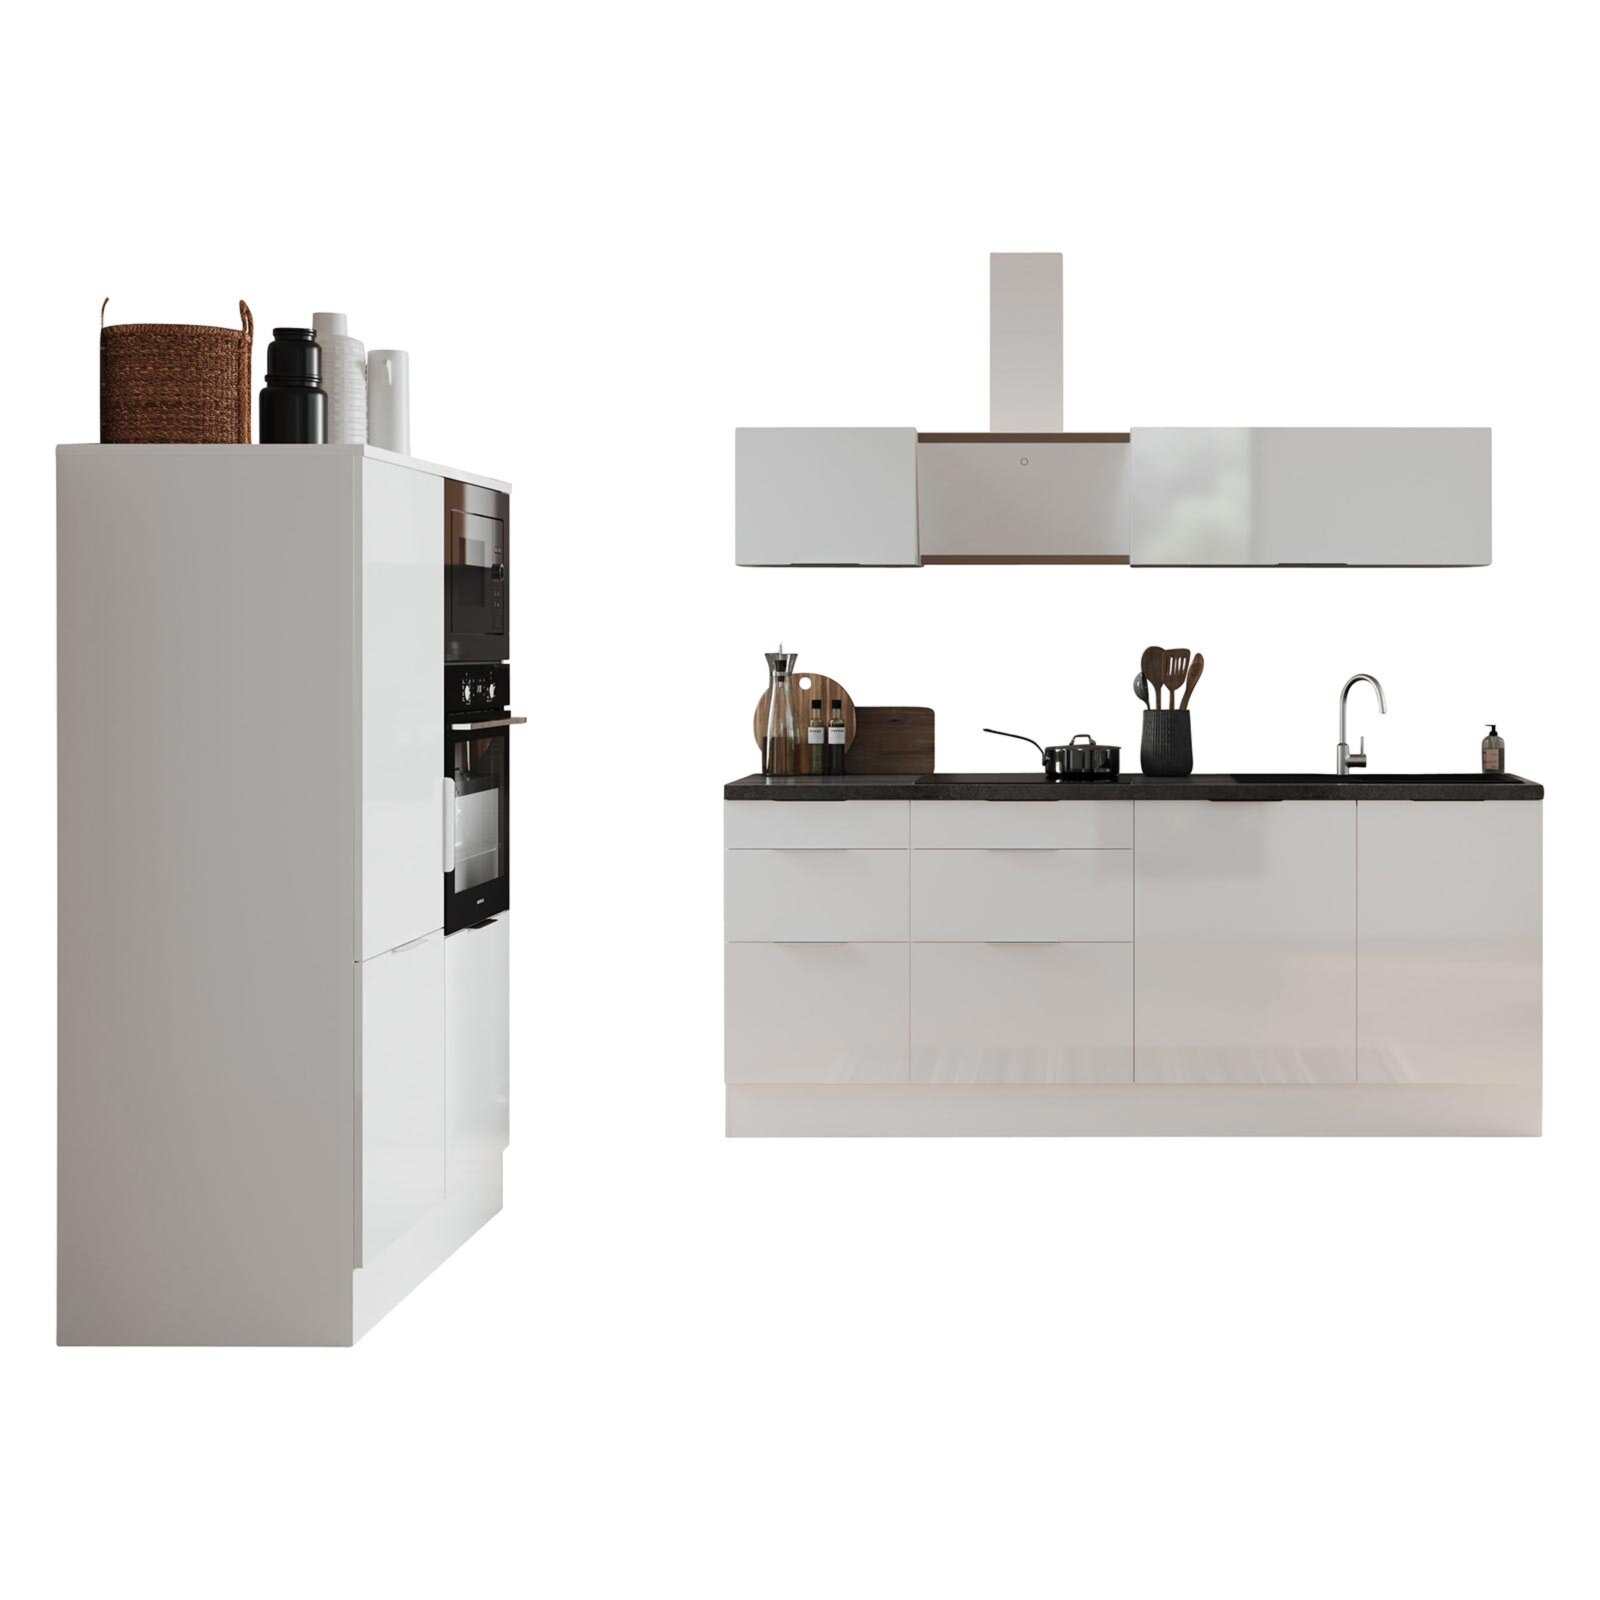 RESPEKTA Küchenblock - weiß Hochglanz - weiß matt - mit E-Geräten - 340 cm  | Online bei ROLLER kaufen